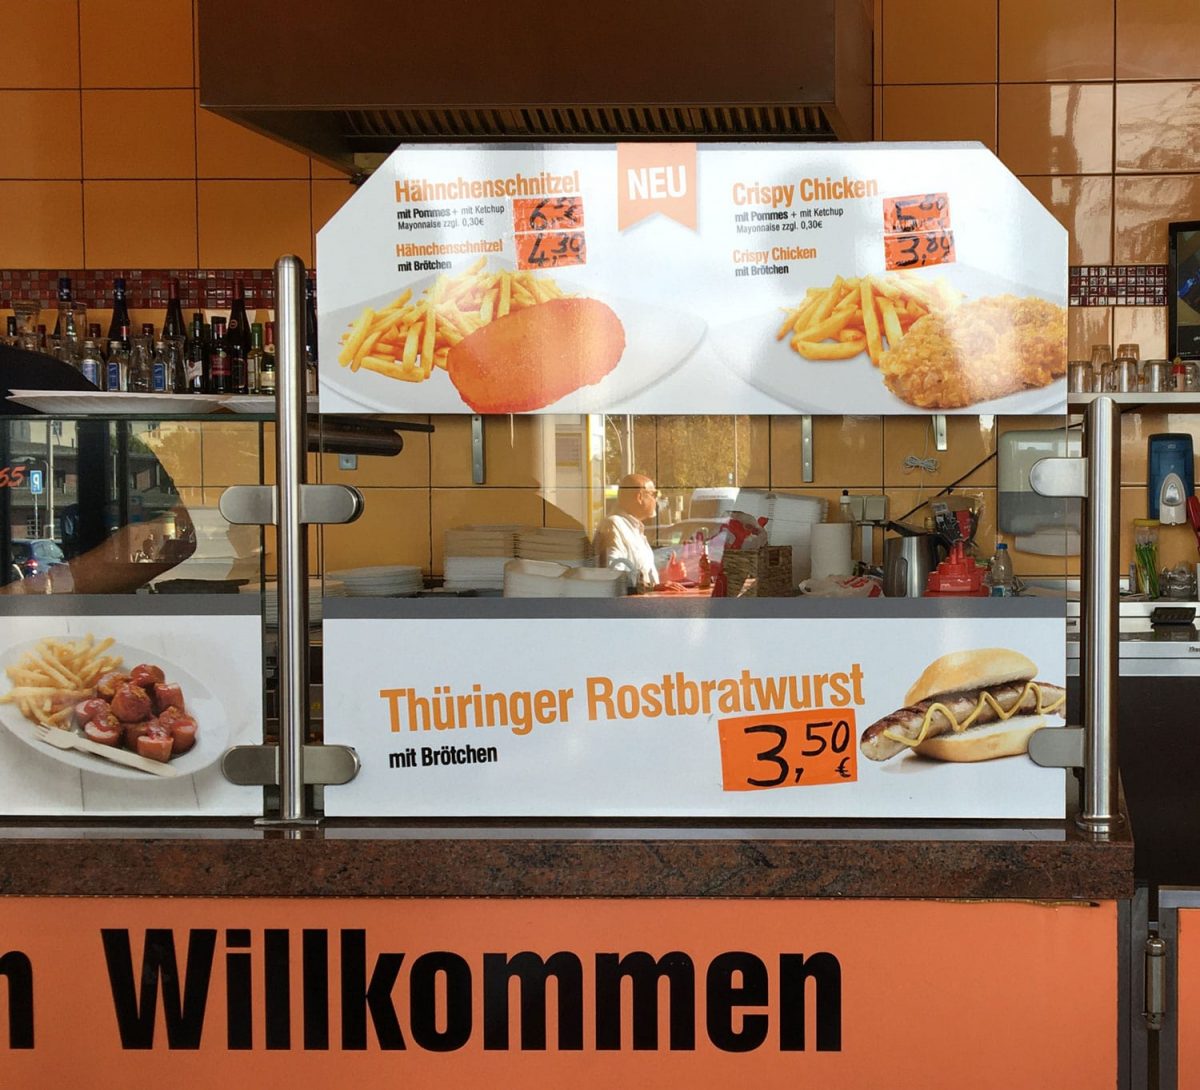 Thüringer Rostbratwurst in Berlin war nicht möglich. Vielleicht auch besser so. Denn eine frittierte Thüringen Bratwurst hätte ich nicht gemocht.